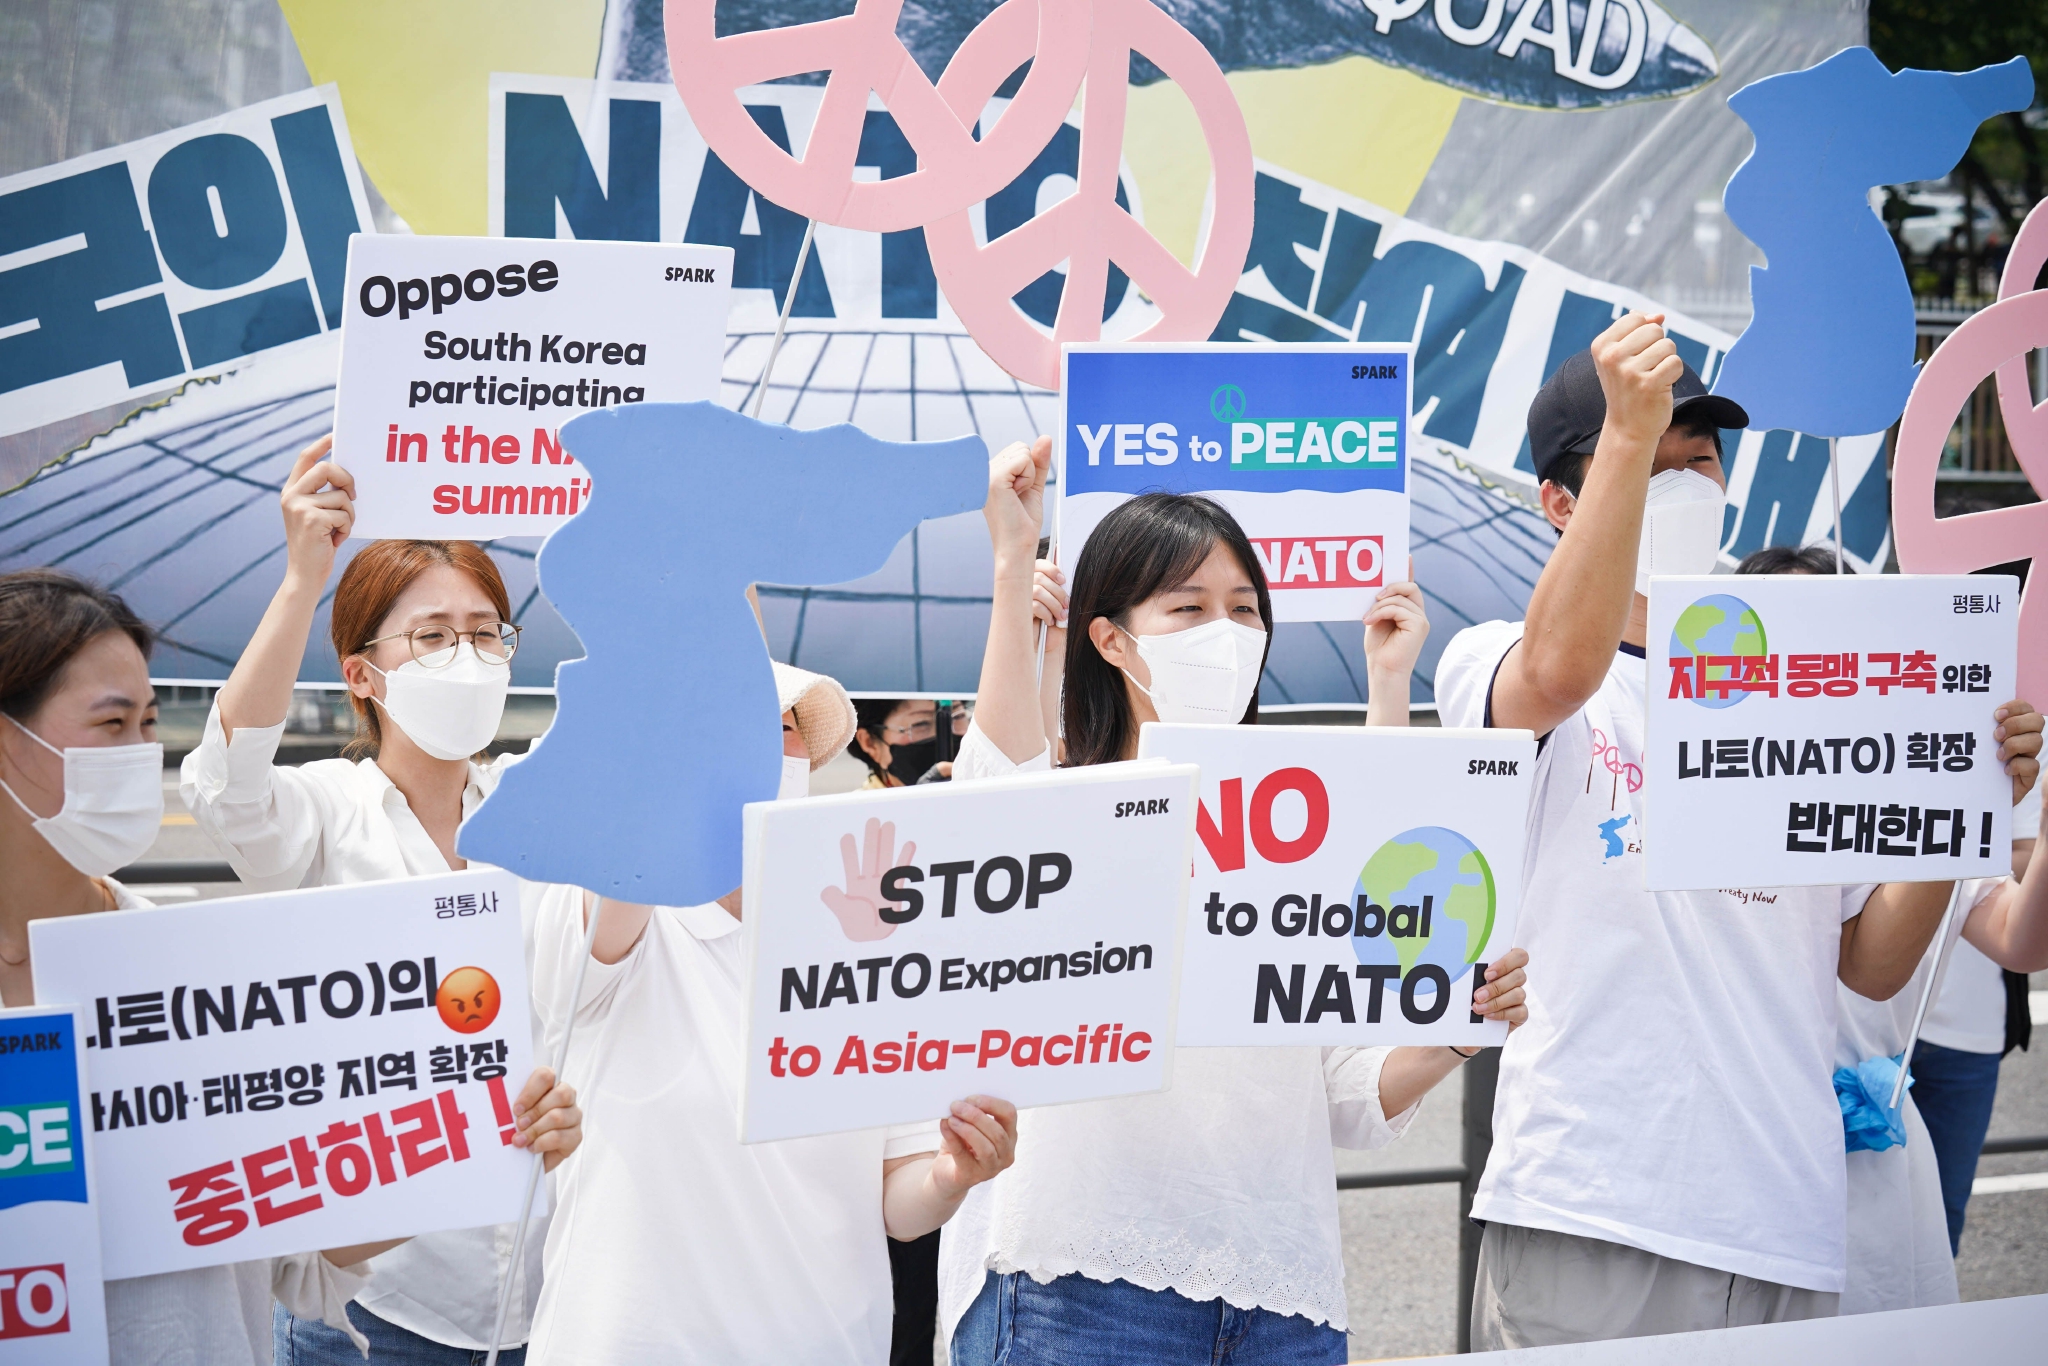 韩国民众抗议尹锡悦出席北约峰会 谴责北约向亚太扩张 (/) 新闻资讯 第1张